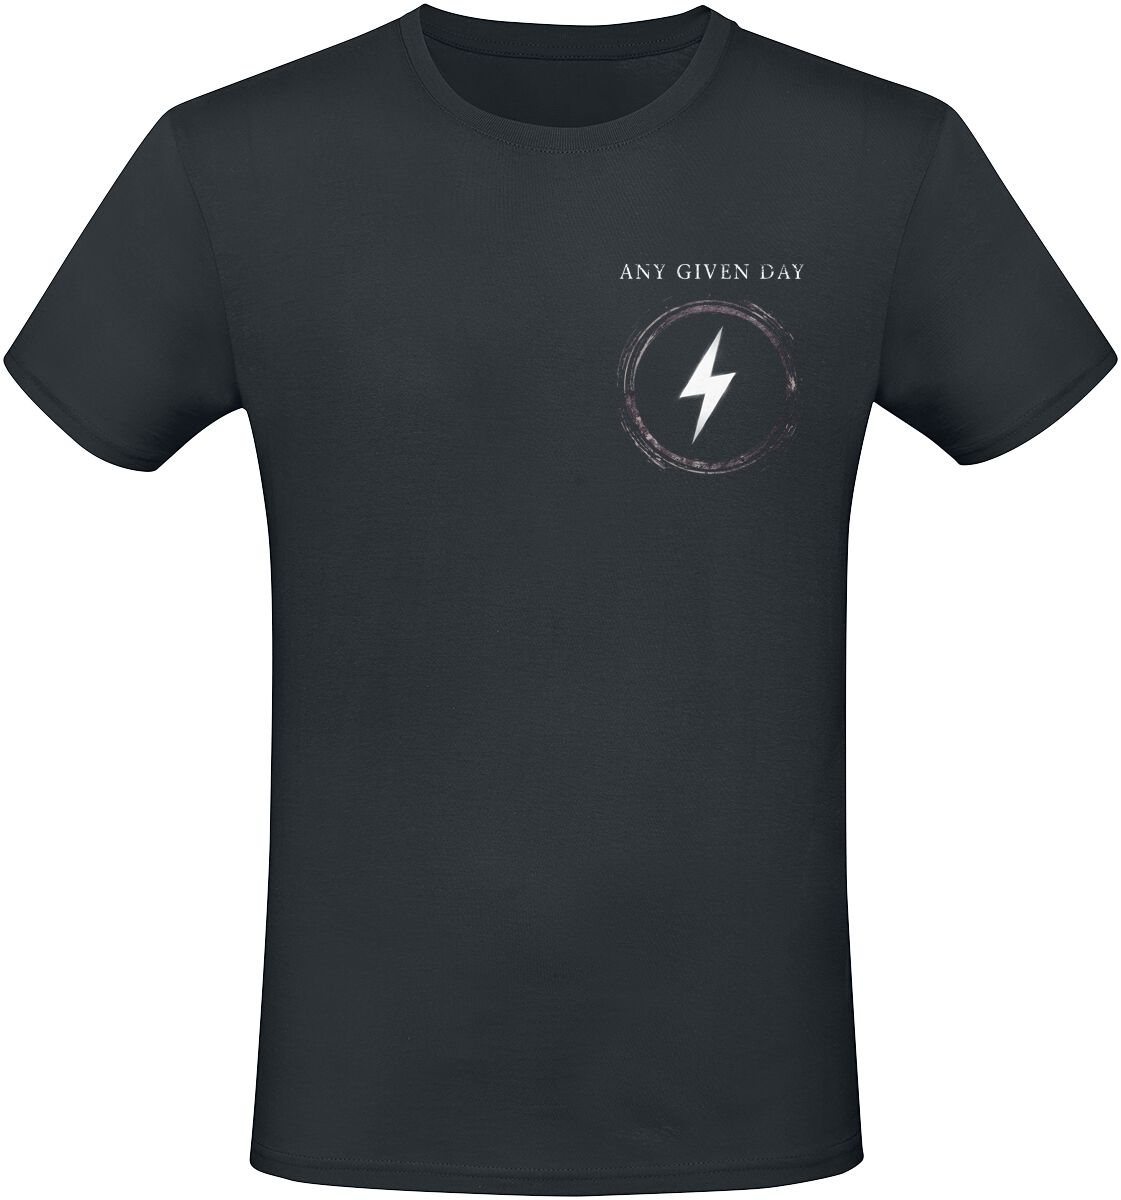 Any Given Day T-Shirt - Overpower - S bis L - für Männer - Größe L - schwarz  - EMP exklusives Merchandise!